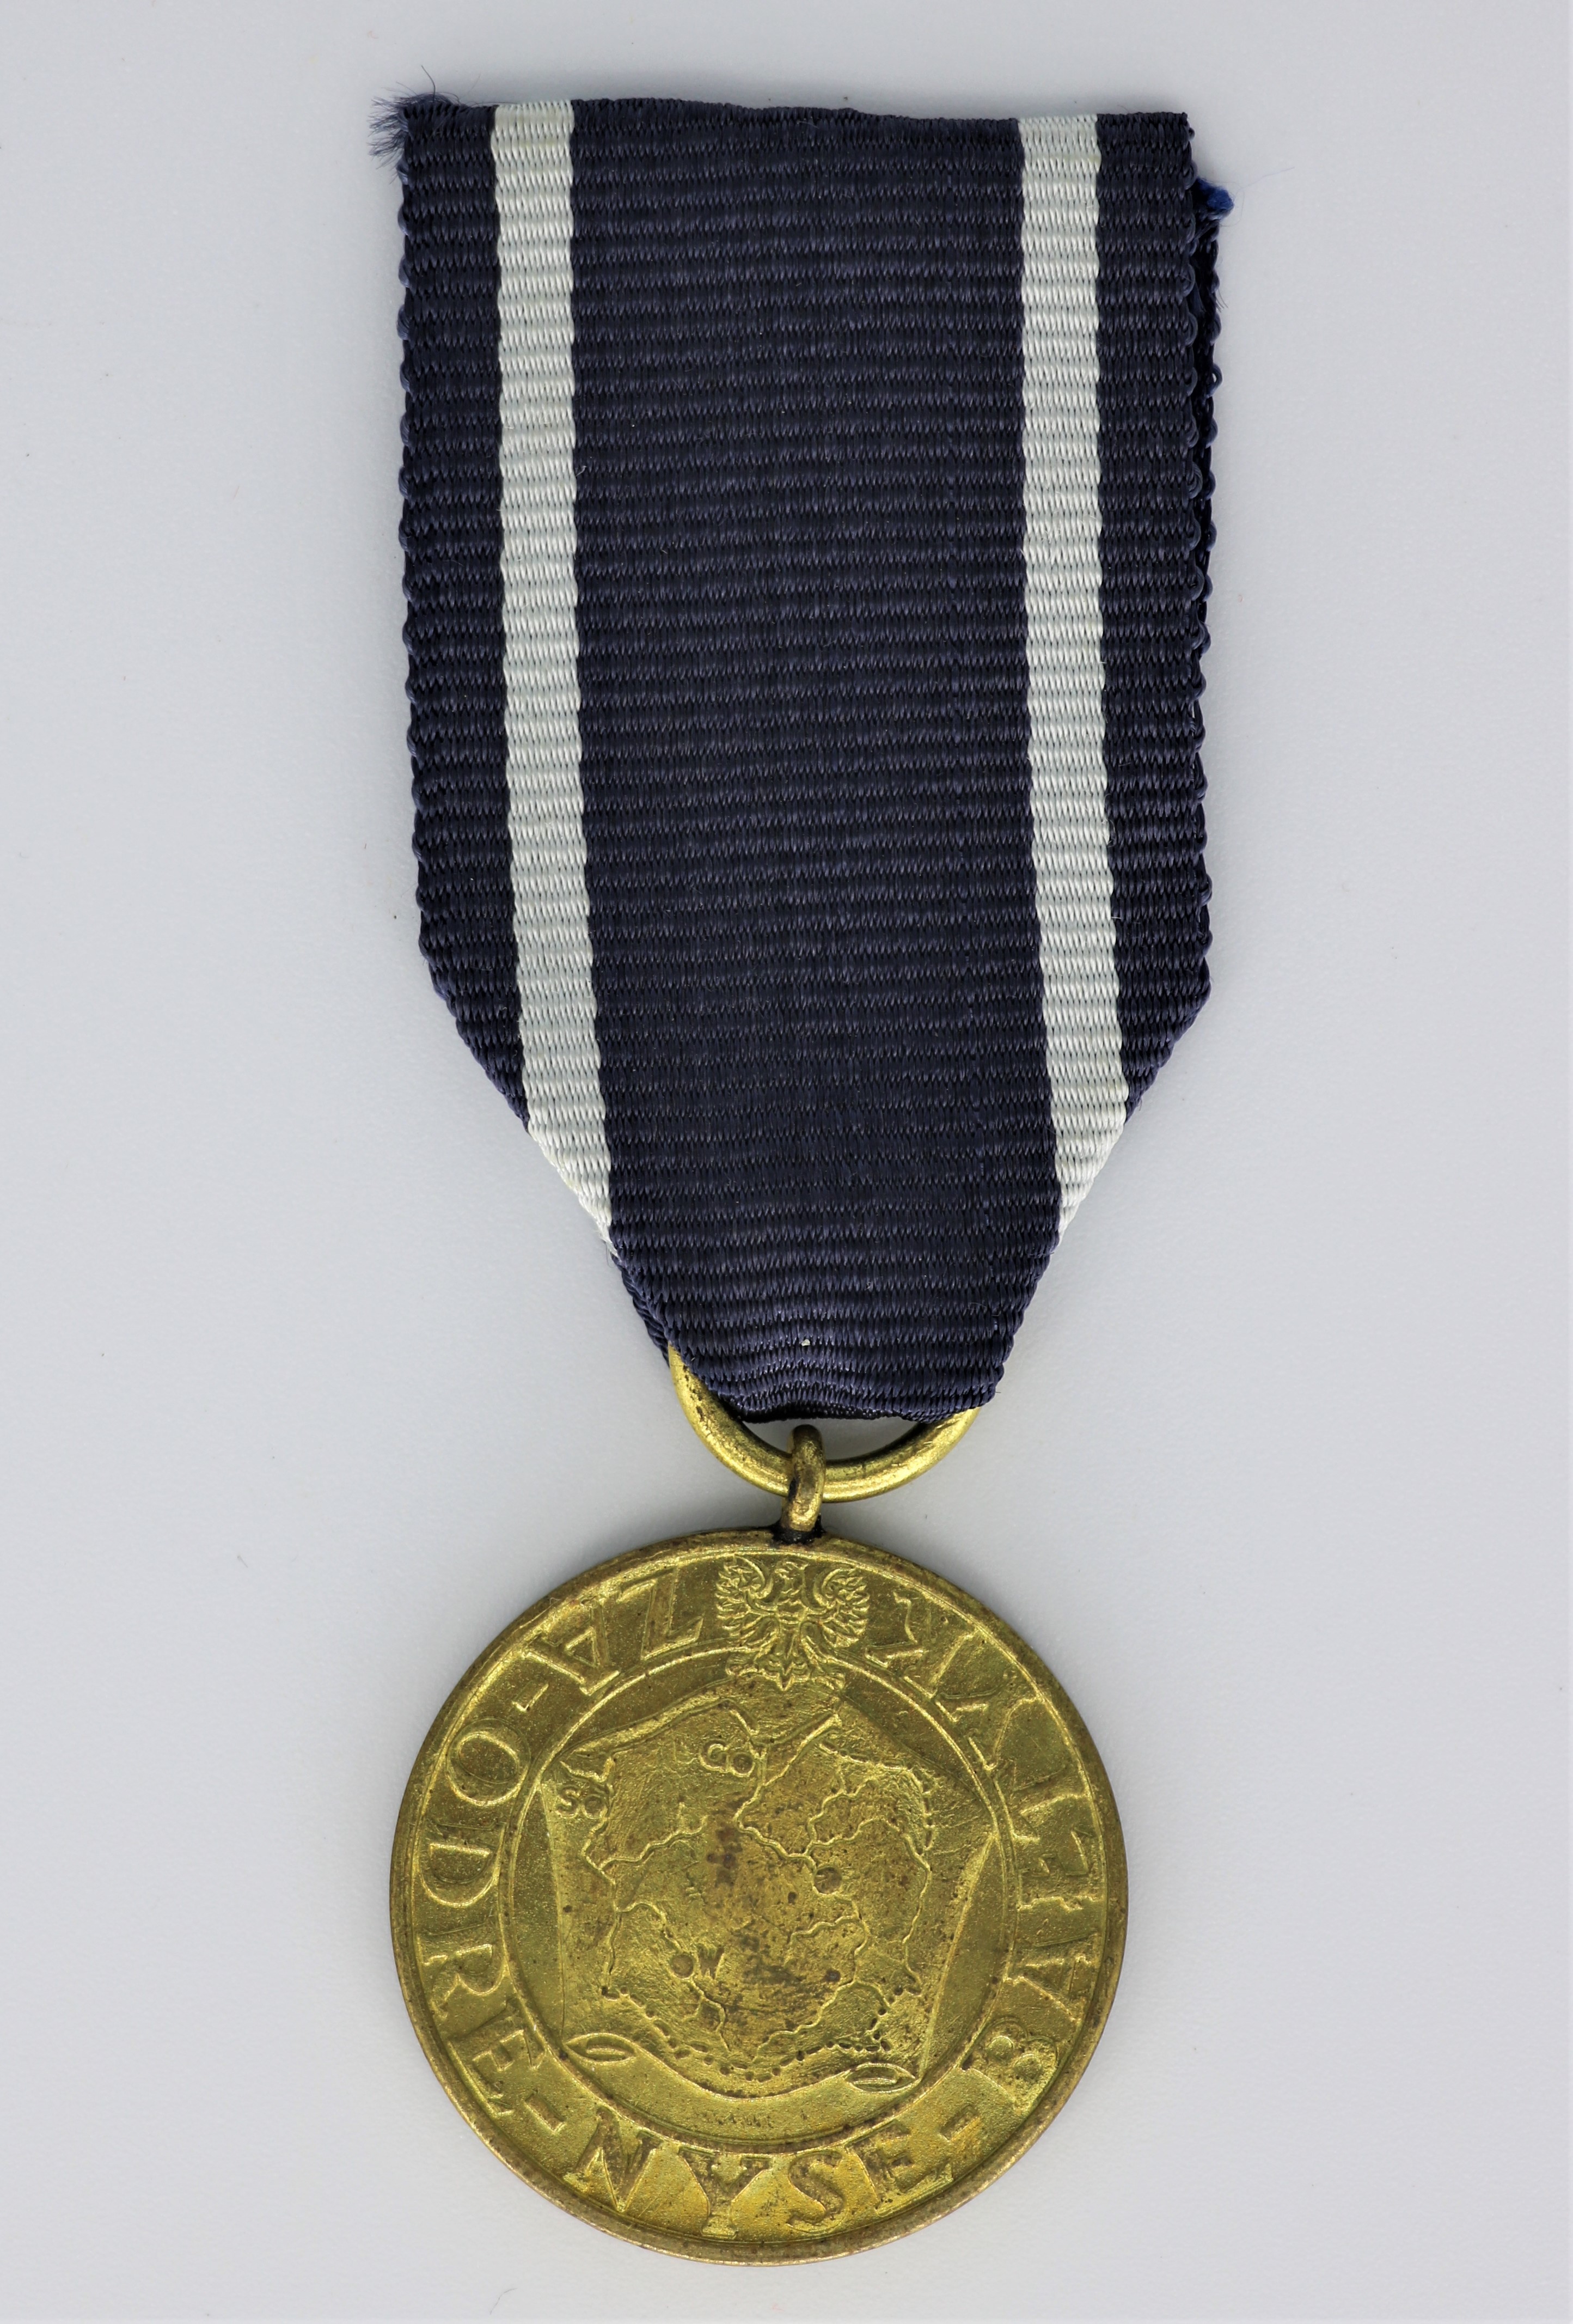 Medaille: Für Oder, Neiße und Ostsee, polnisch (Museum Berlin-Karlshorst CC BY-NC-SA)